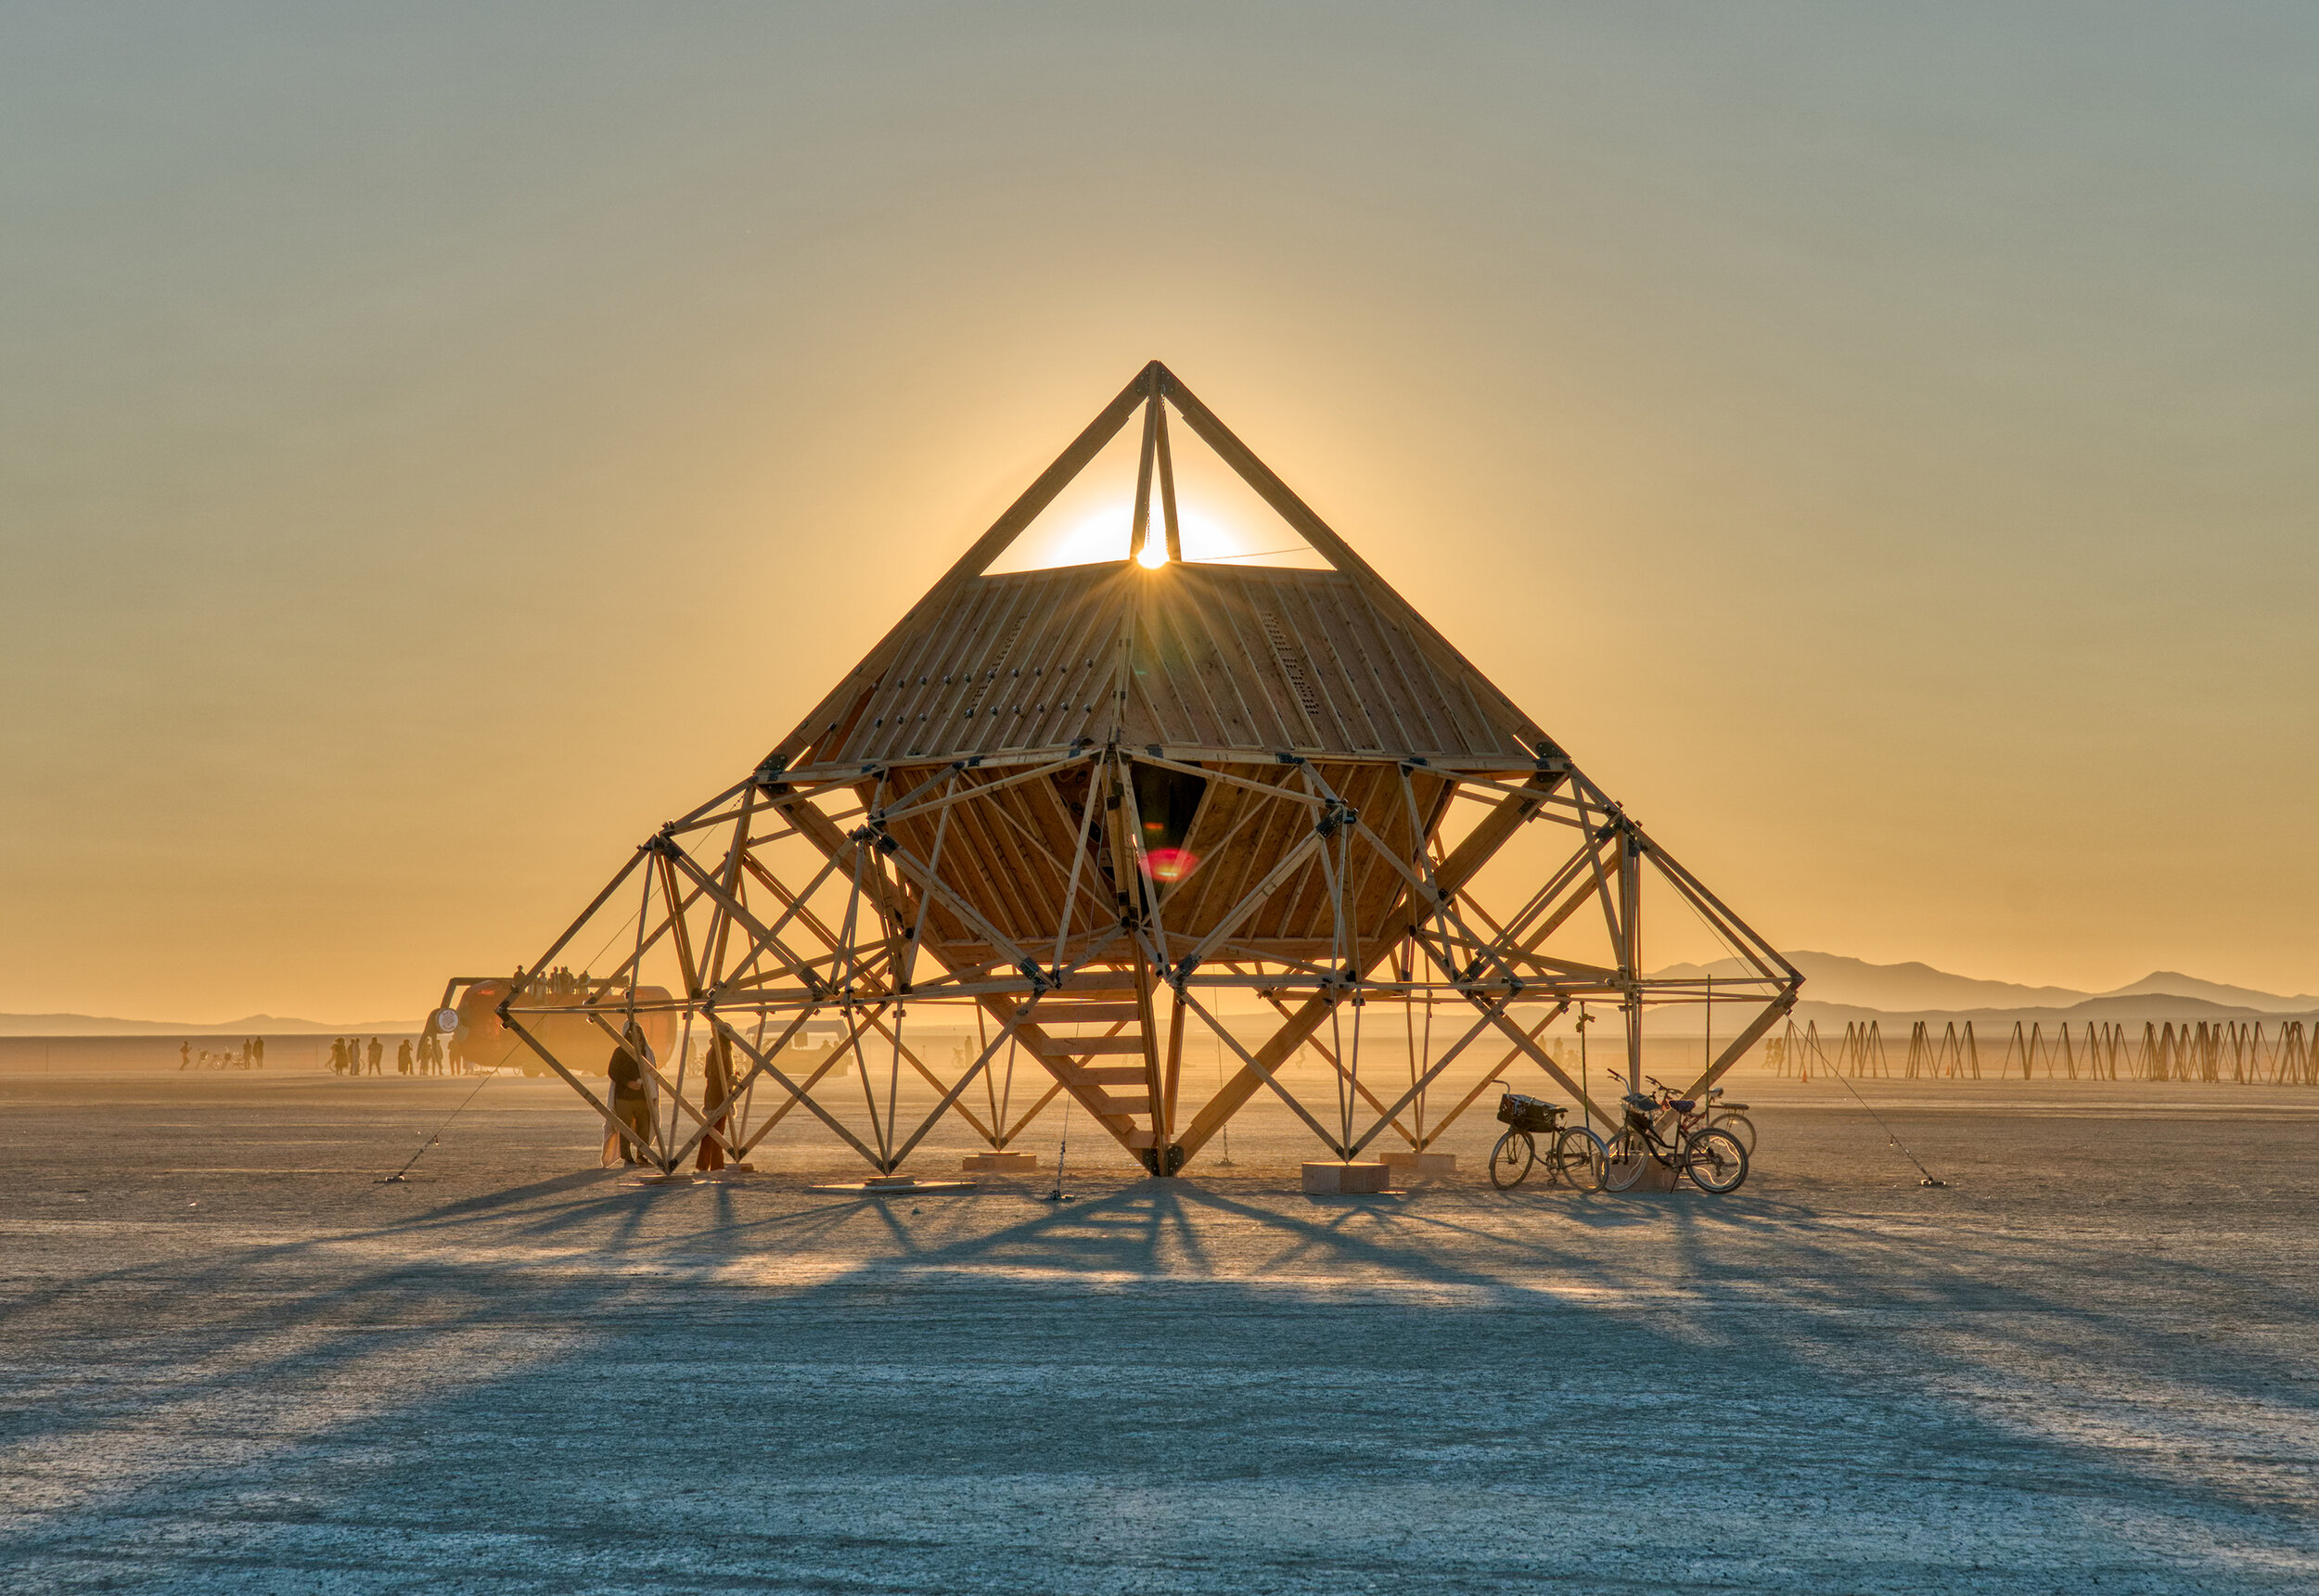 Burning Man 2019 - Temple of Brad Pitt